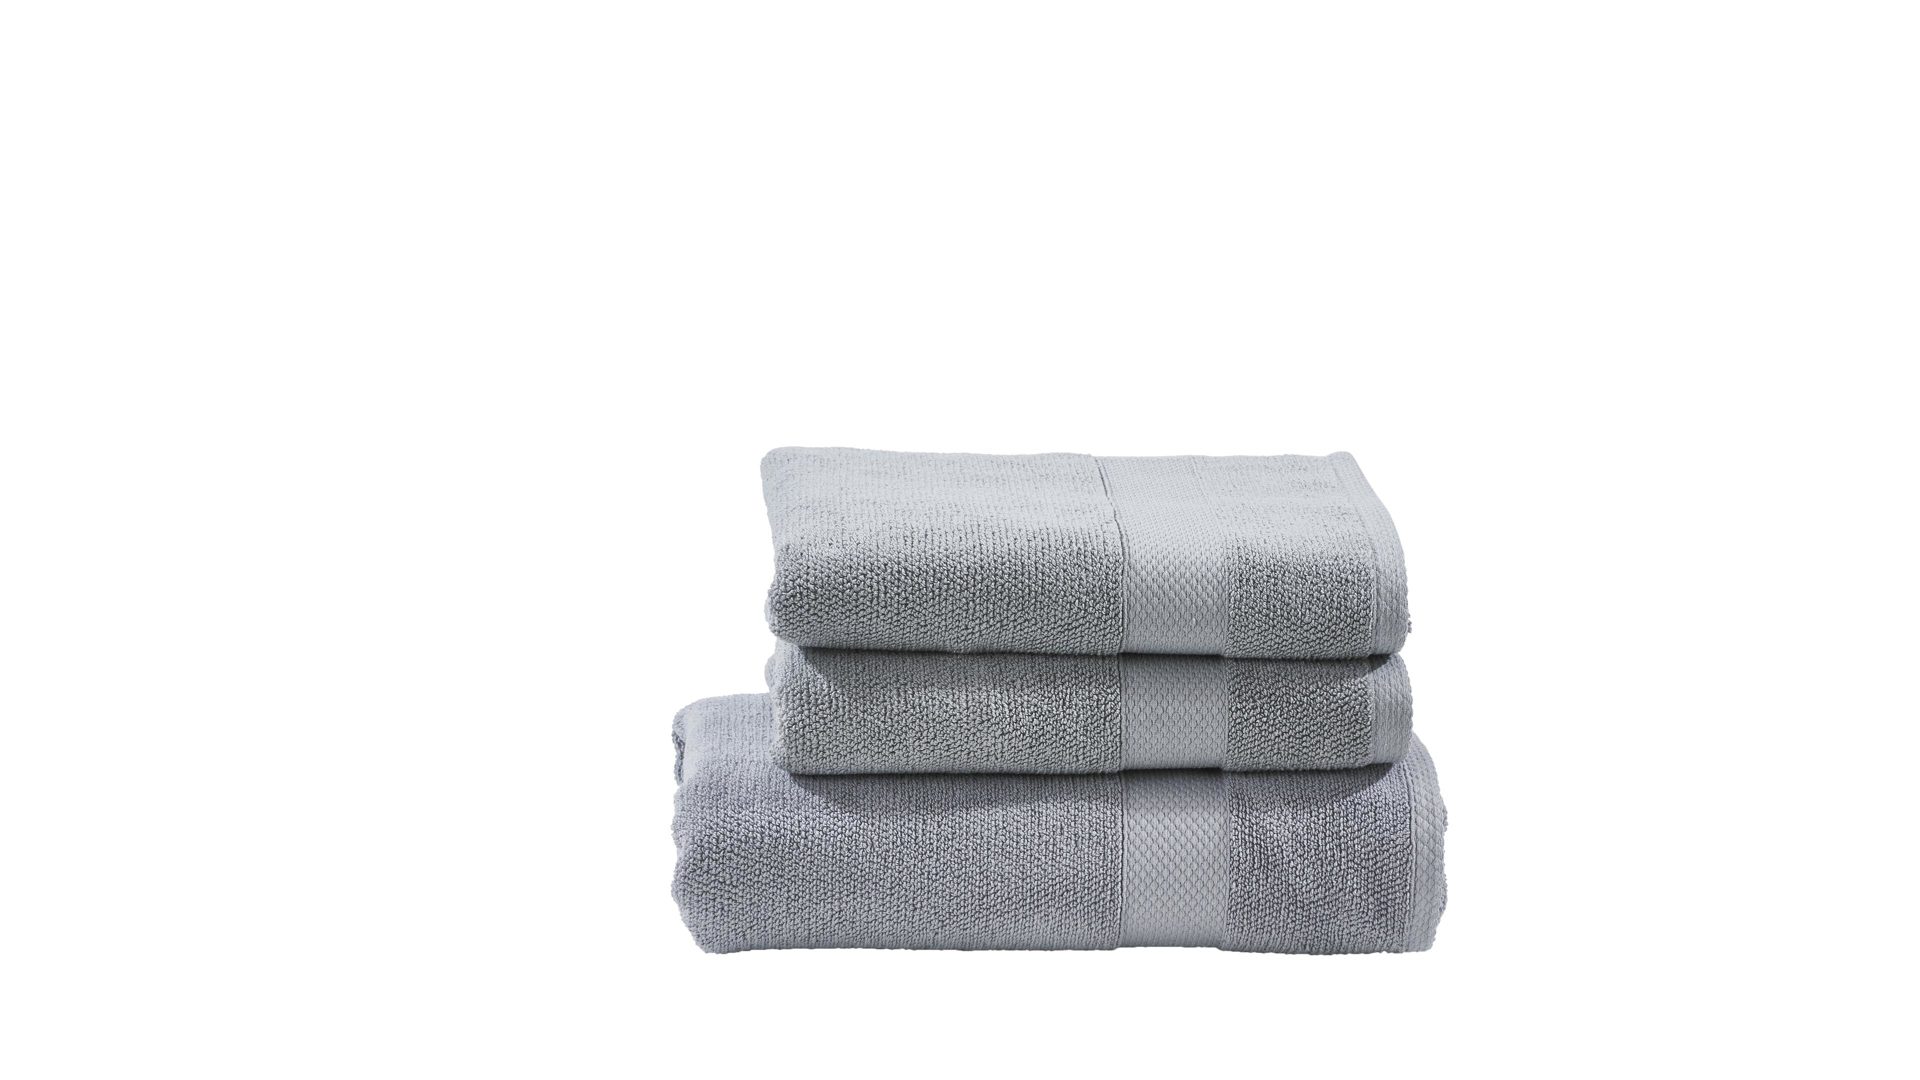 Handtuch-Set Done.® aus Stoff in Hellgrau done.® Handtuch-Set Deluxe silberfarbene Baumwolle  – dreiteilig